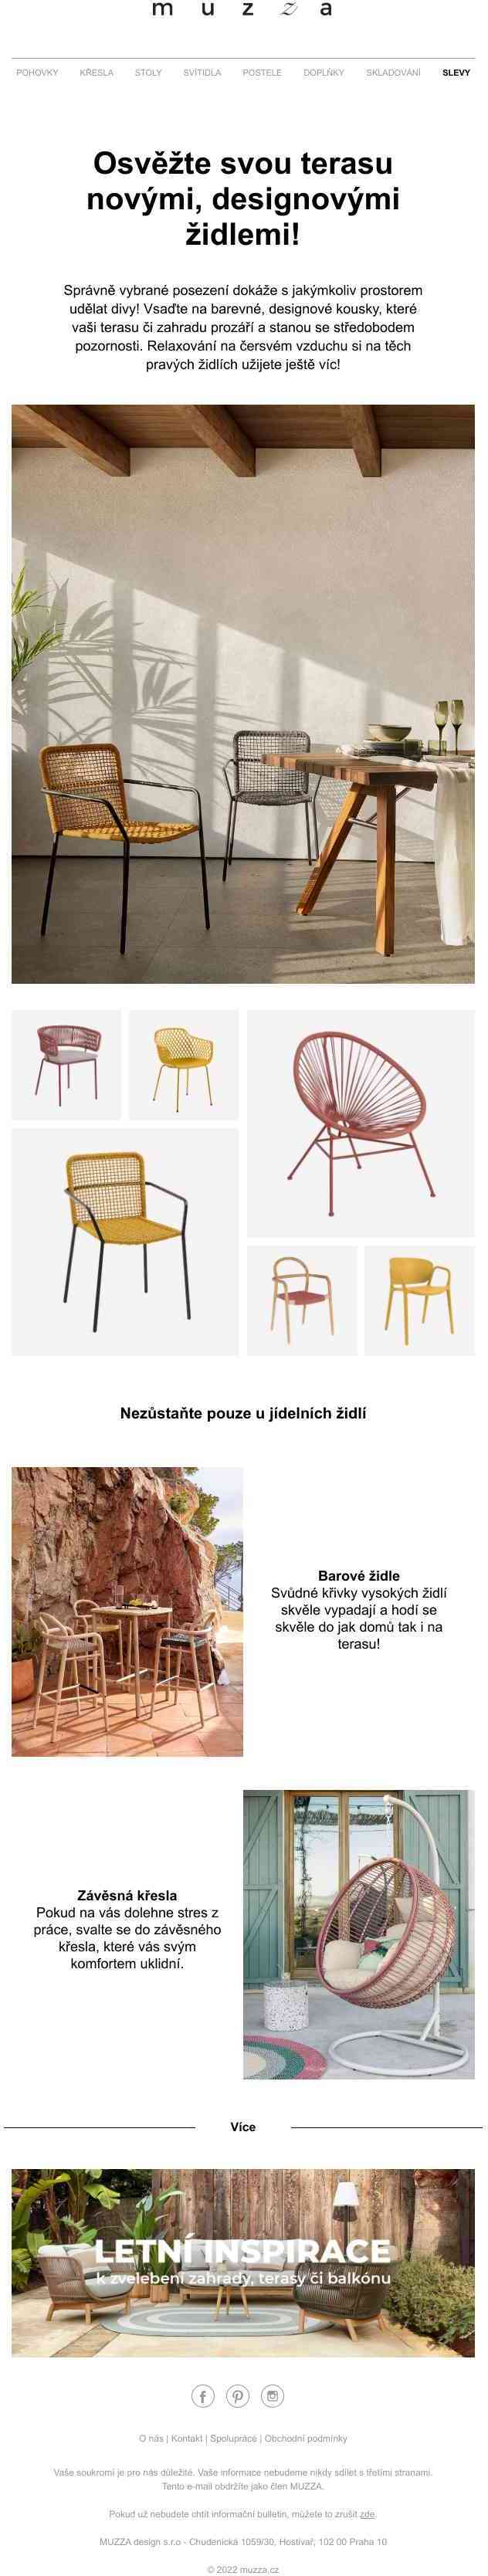 ✨ Osvěžte svou terasu novými, designovými židlemi!